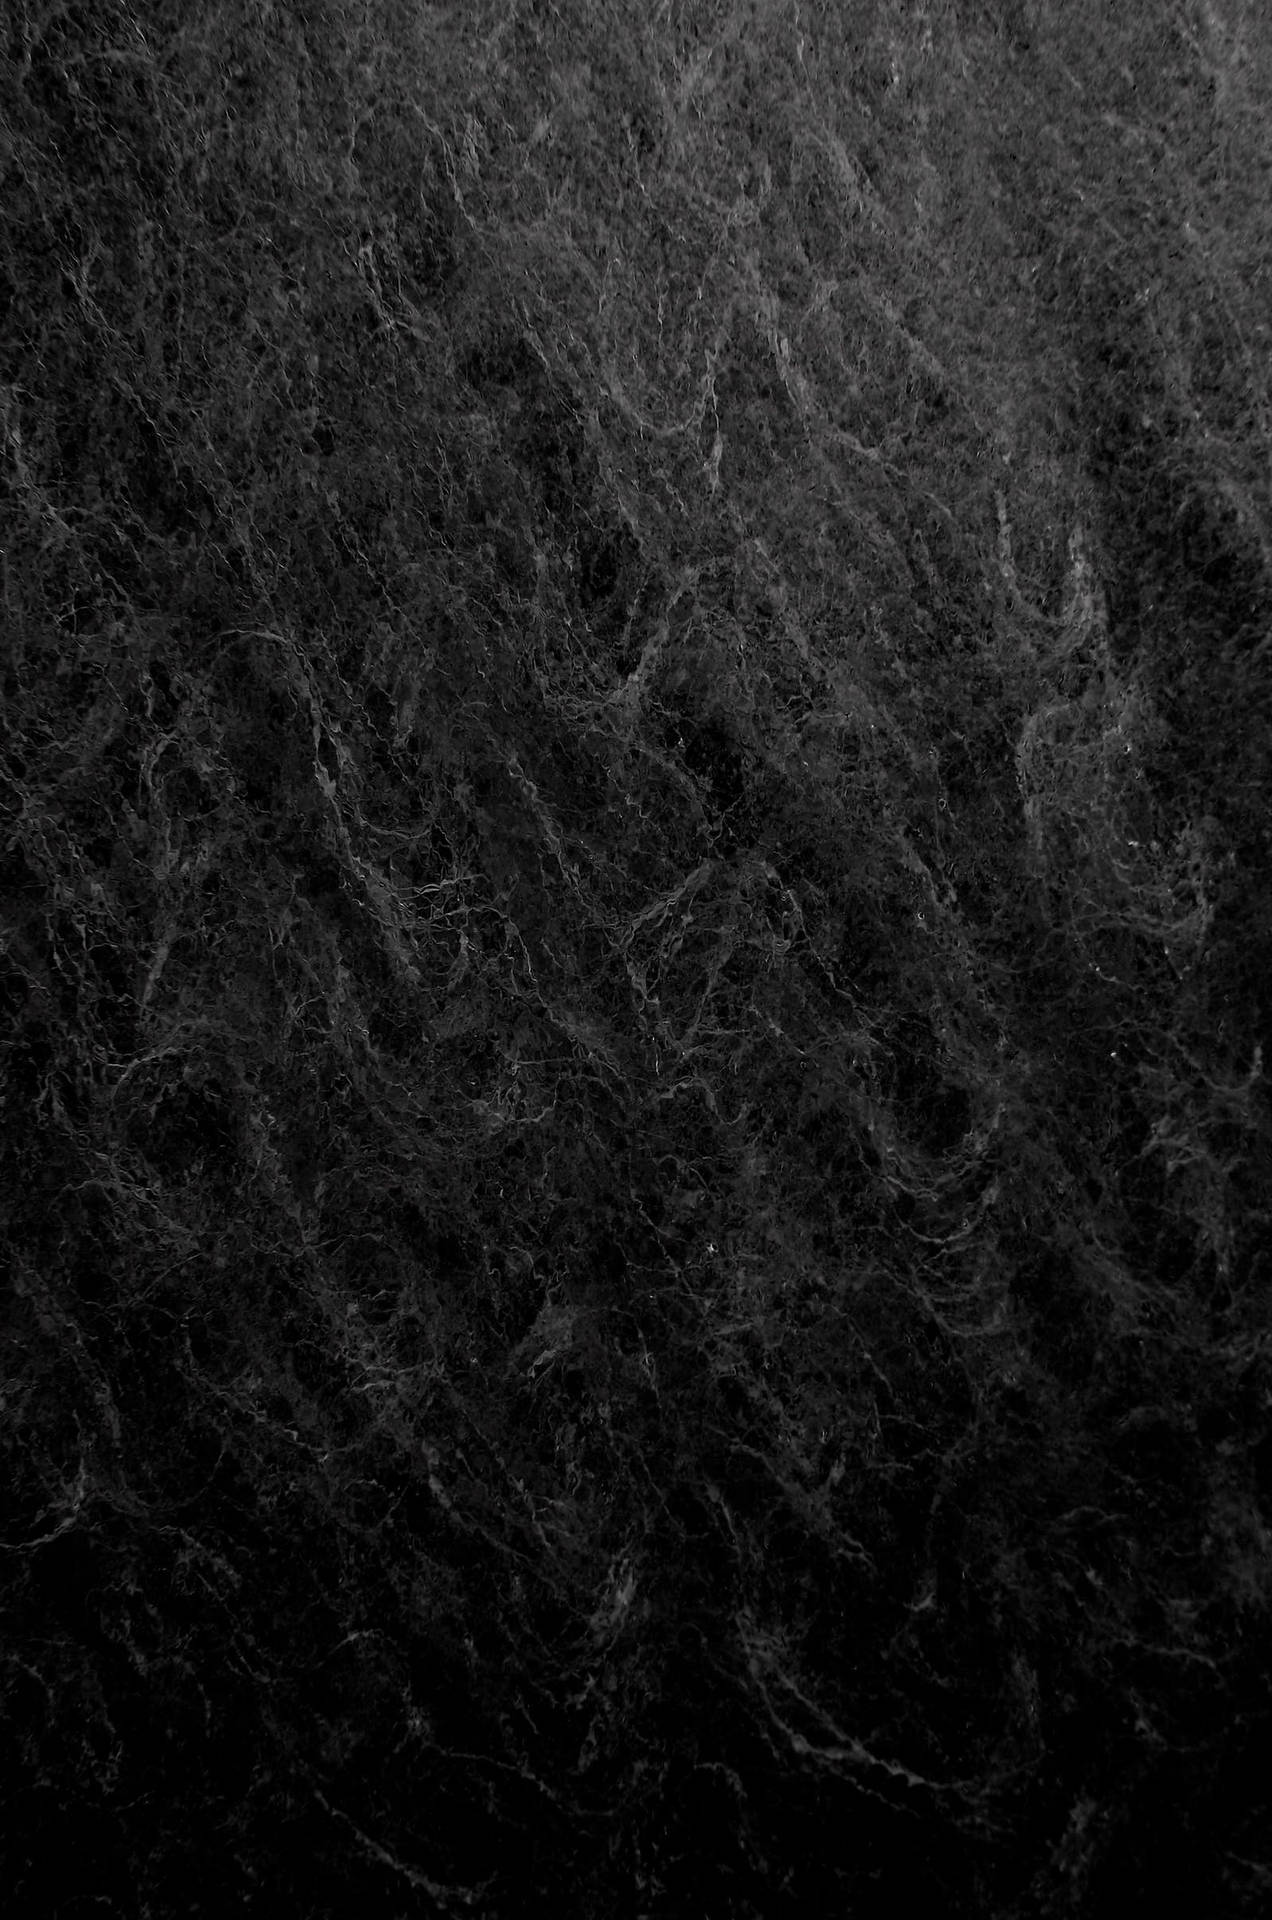 Abstraktewellen Schwarz Und Grau Iphone Wallpaper